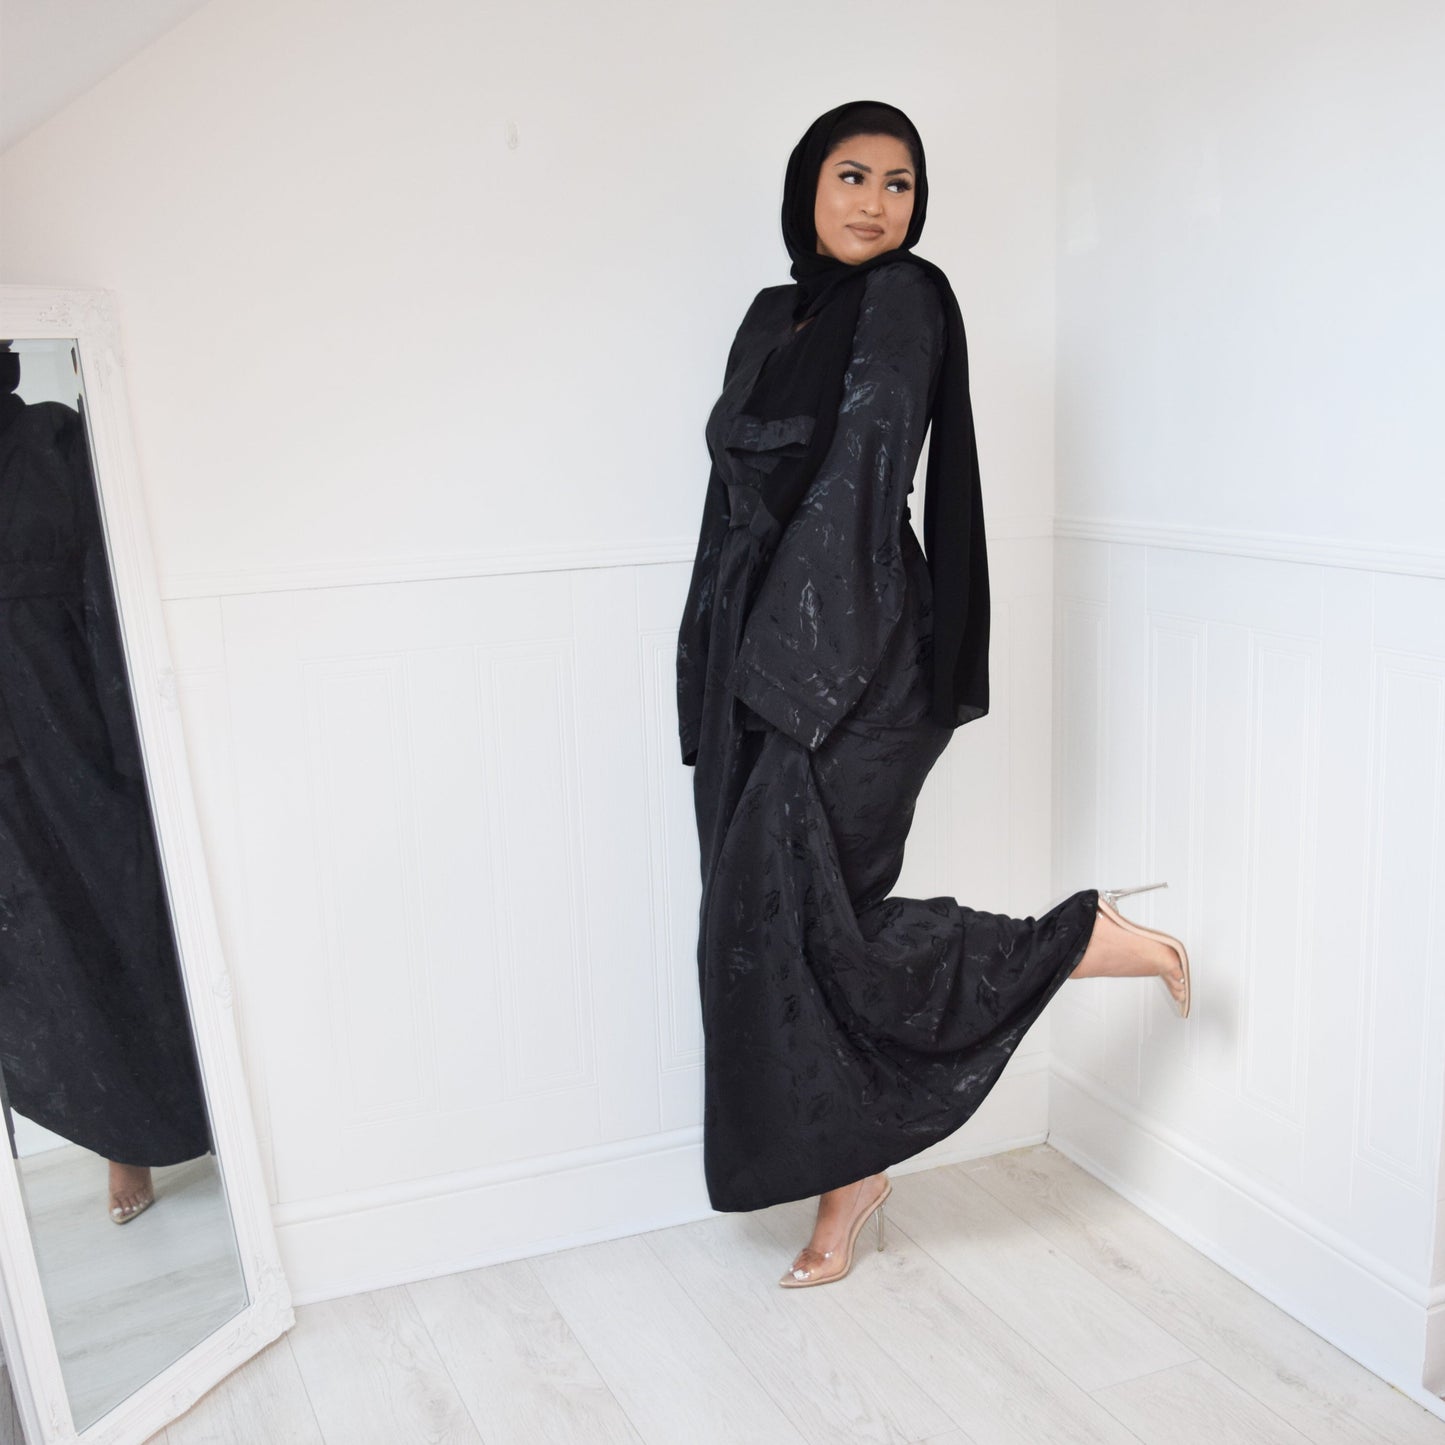 Amalia Black Jacquard Kimono Sleeve A-line Abaya